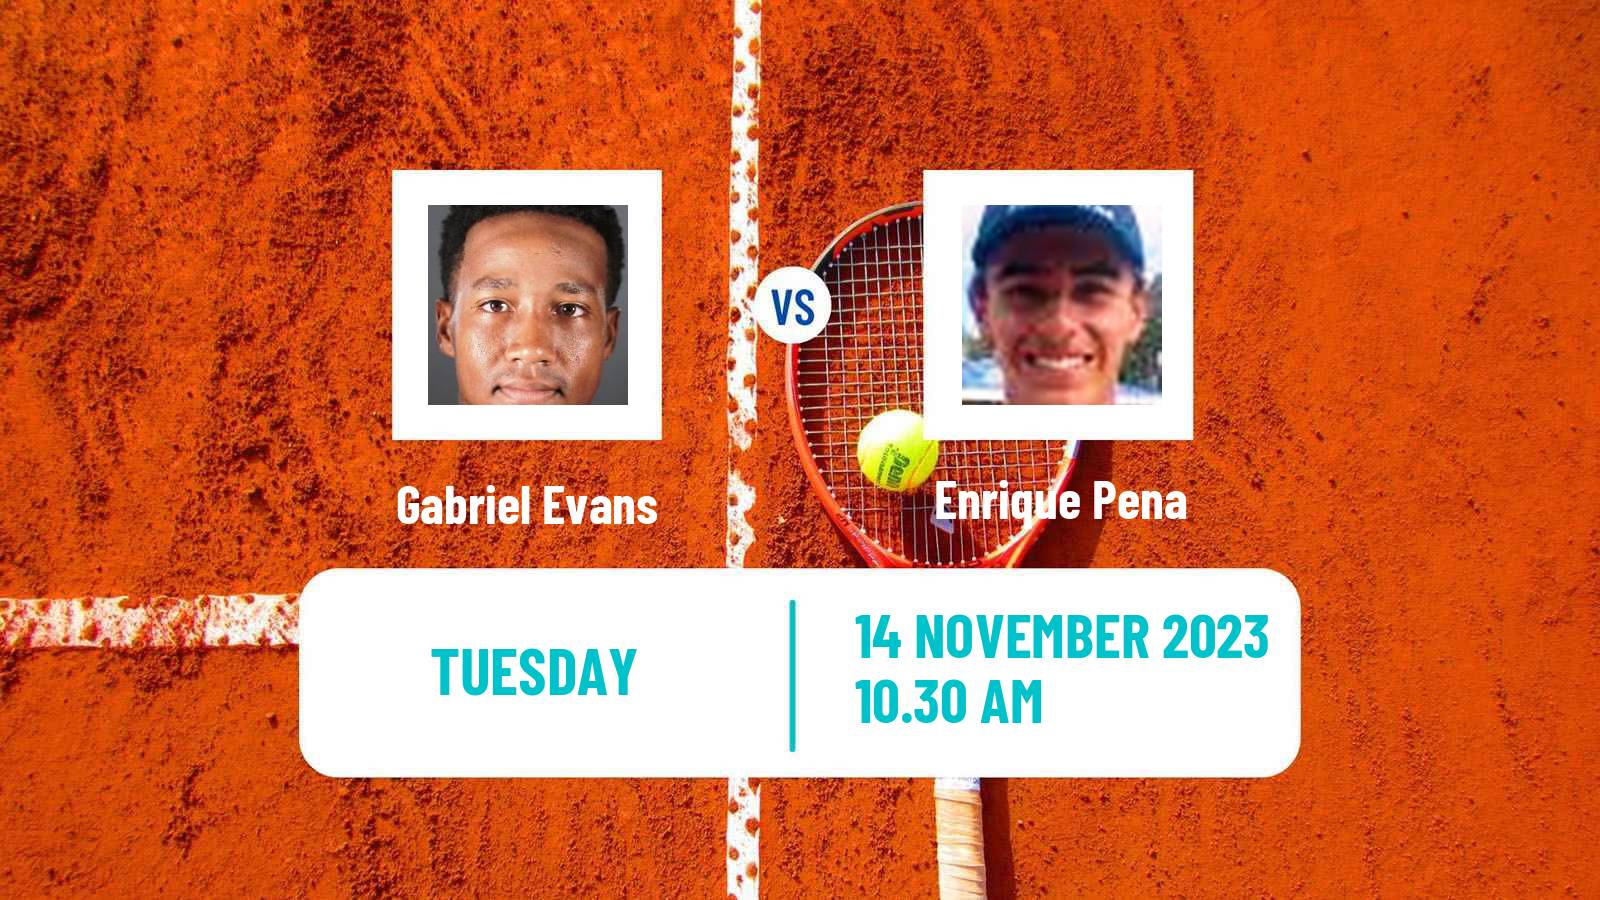 Tennis ITF M15 Santo Domingo 5 Men Gabriel Evans - Enrique Pena